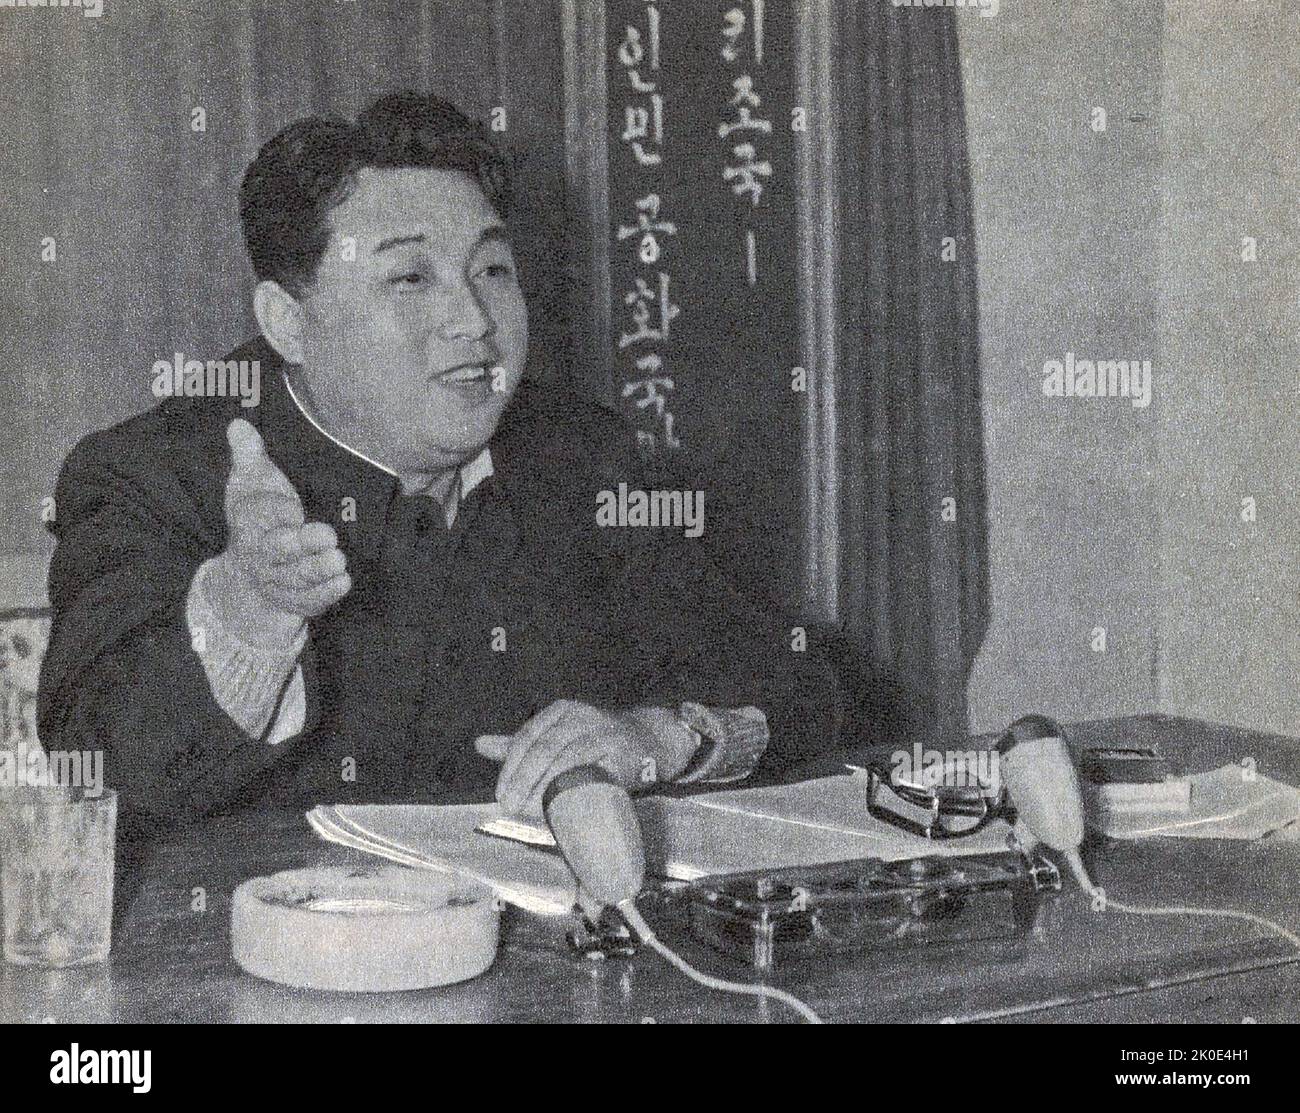 Propagandafoto von Kim Il-sung, um mit Mitgliedern der kommunistischen Partei zu sprechen, um die Arbeiter in Nordkorea zu motivieren, das Land aus den Trümmern des Koreakrieges zu holen, um in kurzer Zeit ein besseres Leben und ein wohlhabenderes Land zu erhalten. Kim Il-sung führte den Begriff Chollima erstmals im Dezember 1956 ein, kurz vor Beginn des Fünfjahresplans 1957-61. Stockfoto